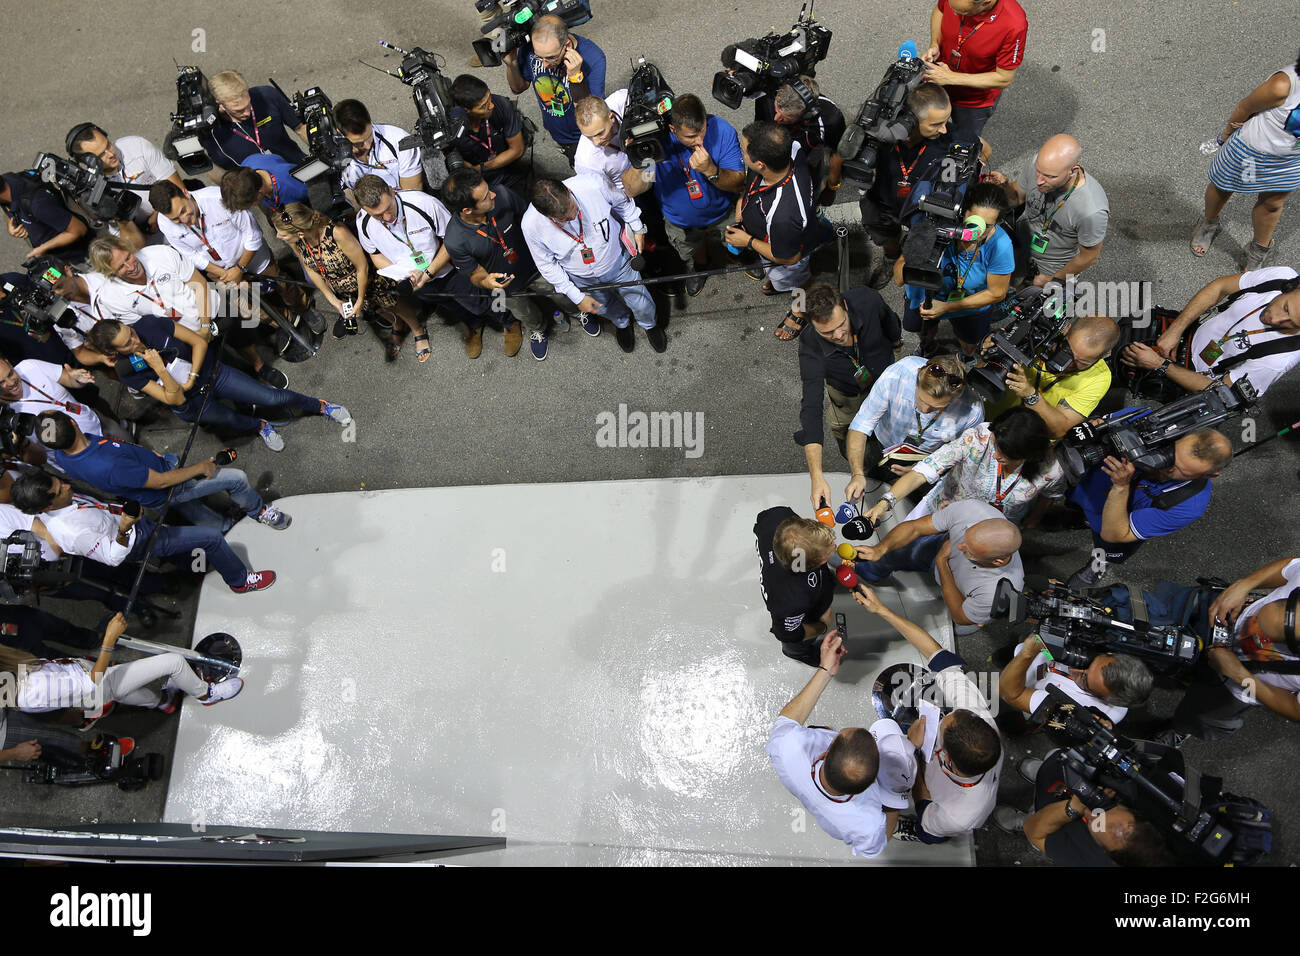 Automovilismo: Campeonato del Mundo de Fórmula Uno FIA 2015, Gran Premio de Singapur, #6 Nico Rosberg (GER, Mercedes AMG Petronas Formula One Team), Foto de stock